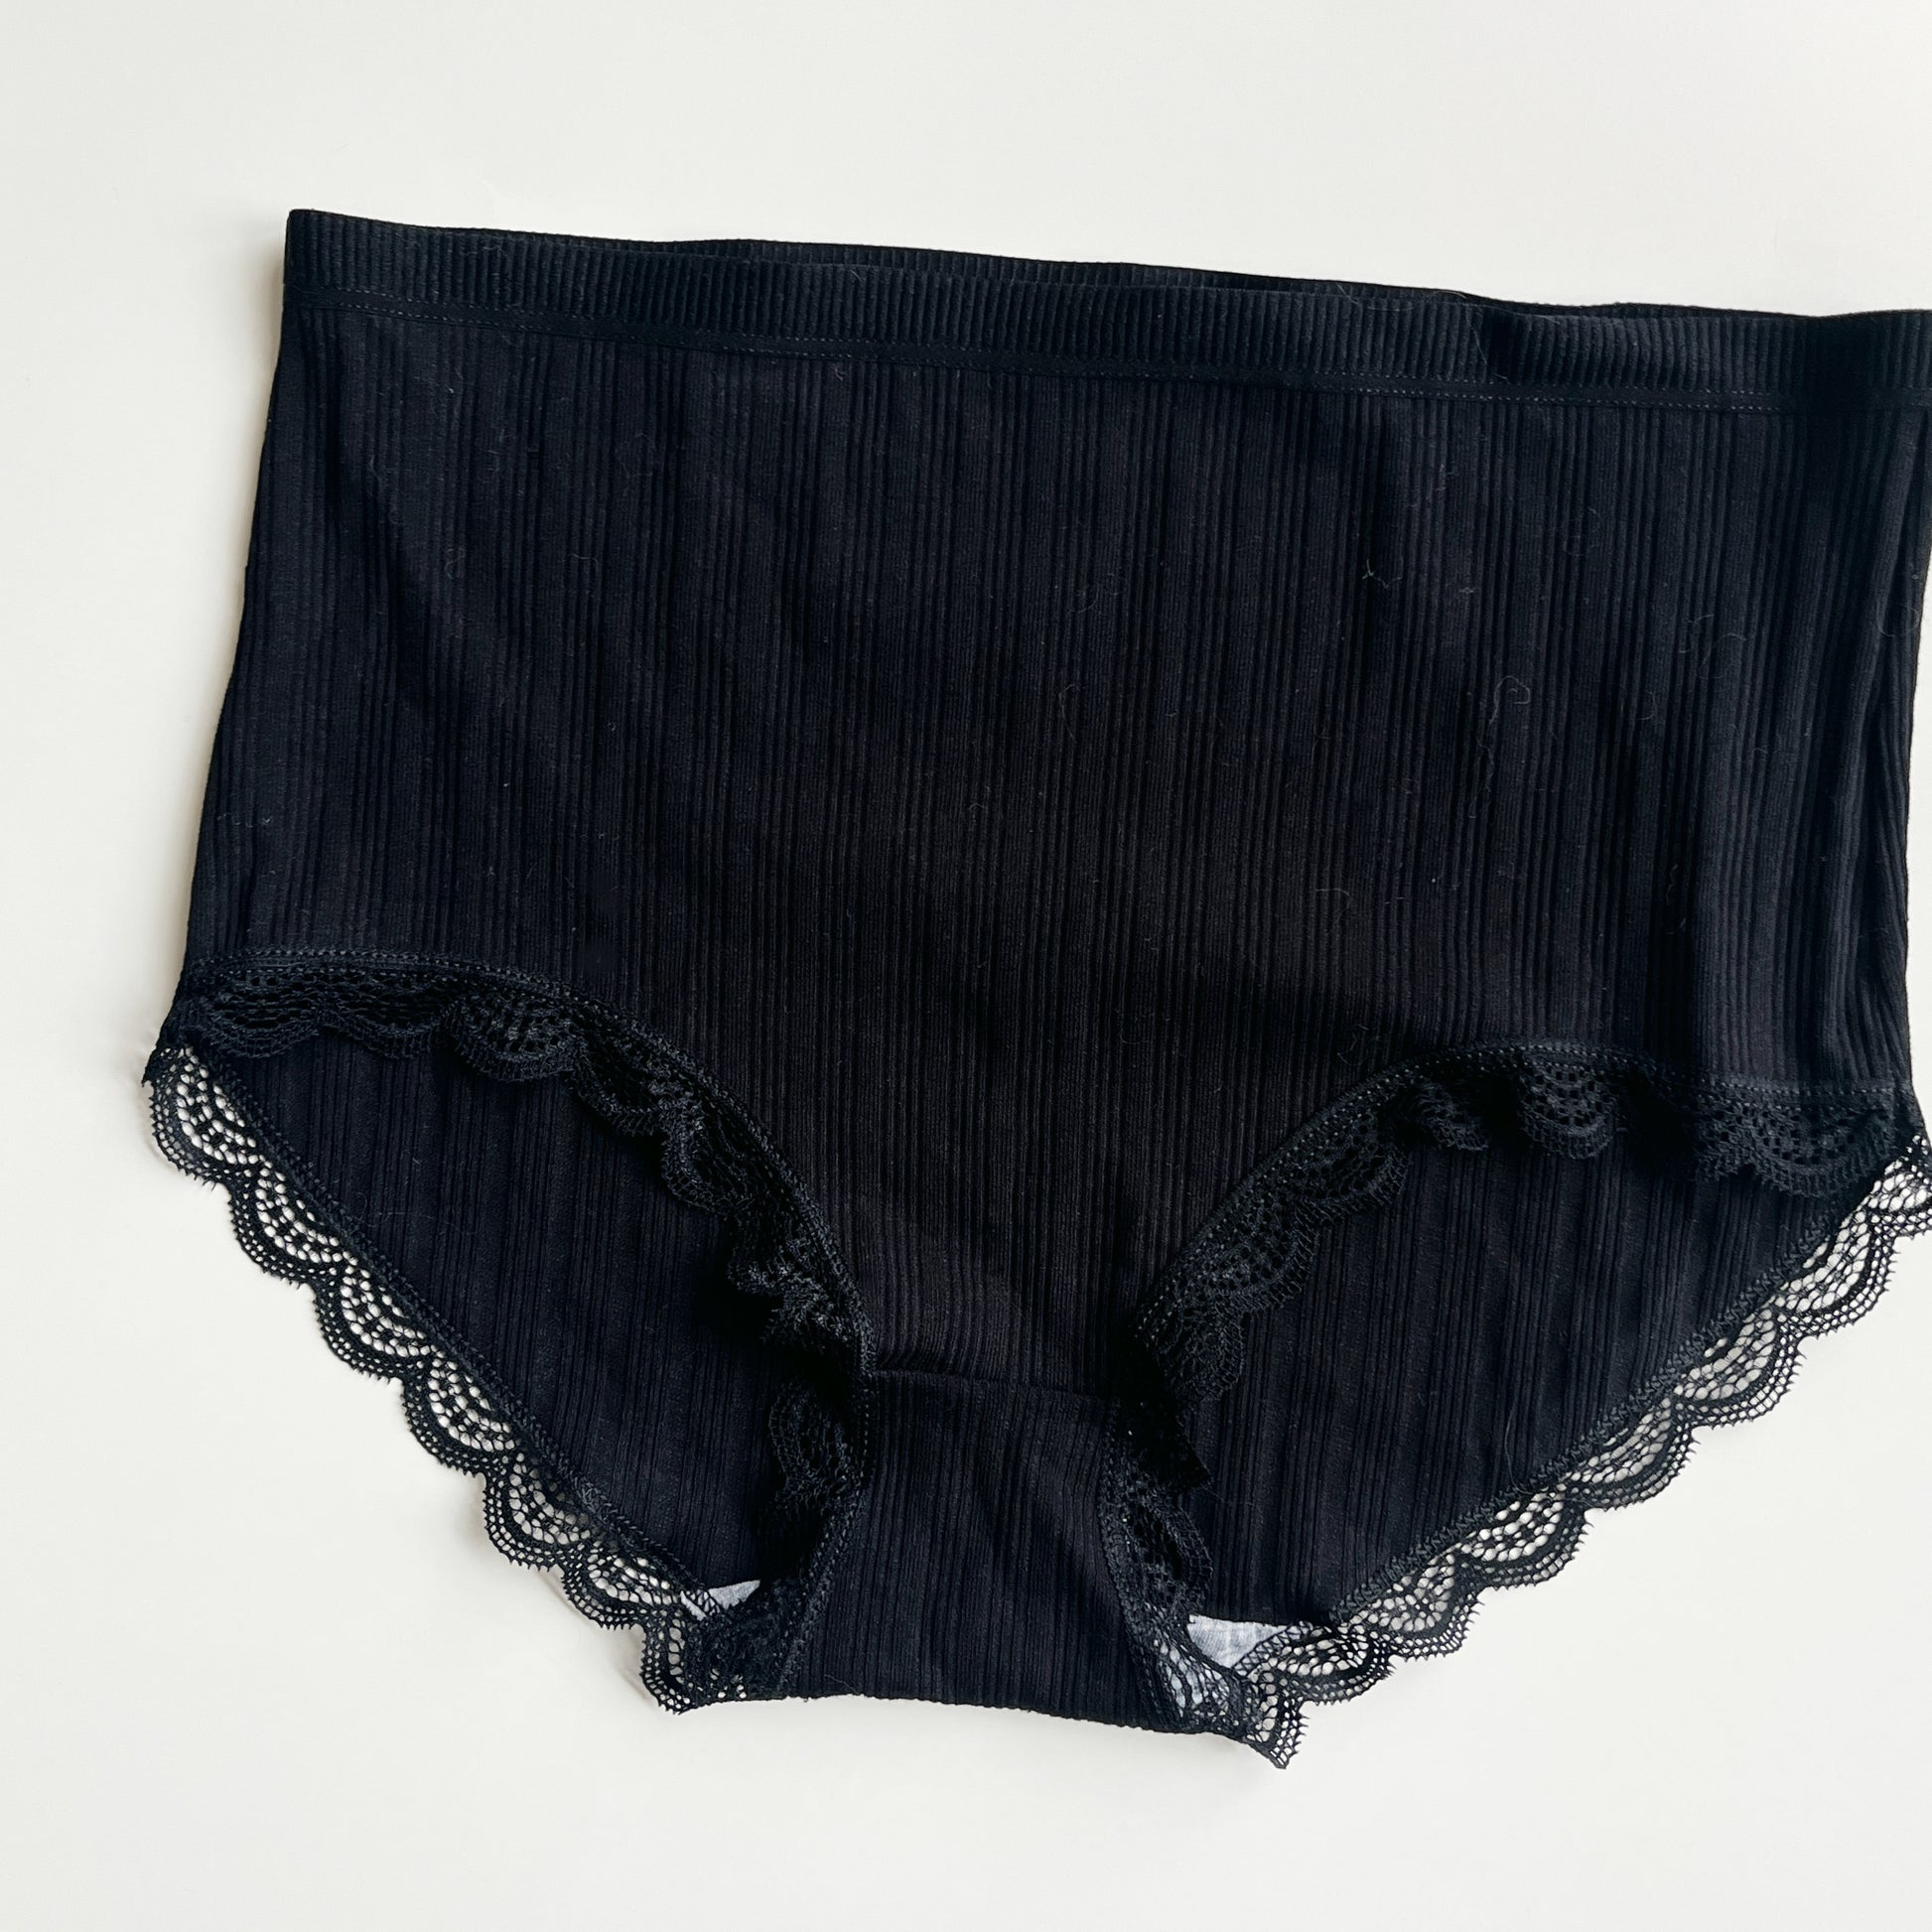 SAYFUT Women's High Waist Lace Print Cotton Solid Underwear Full